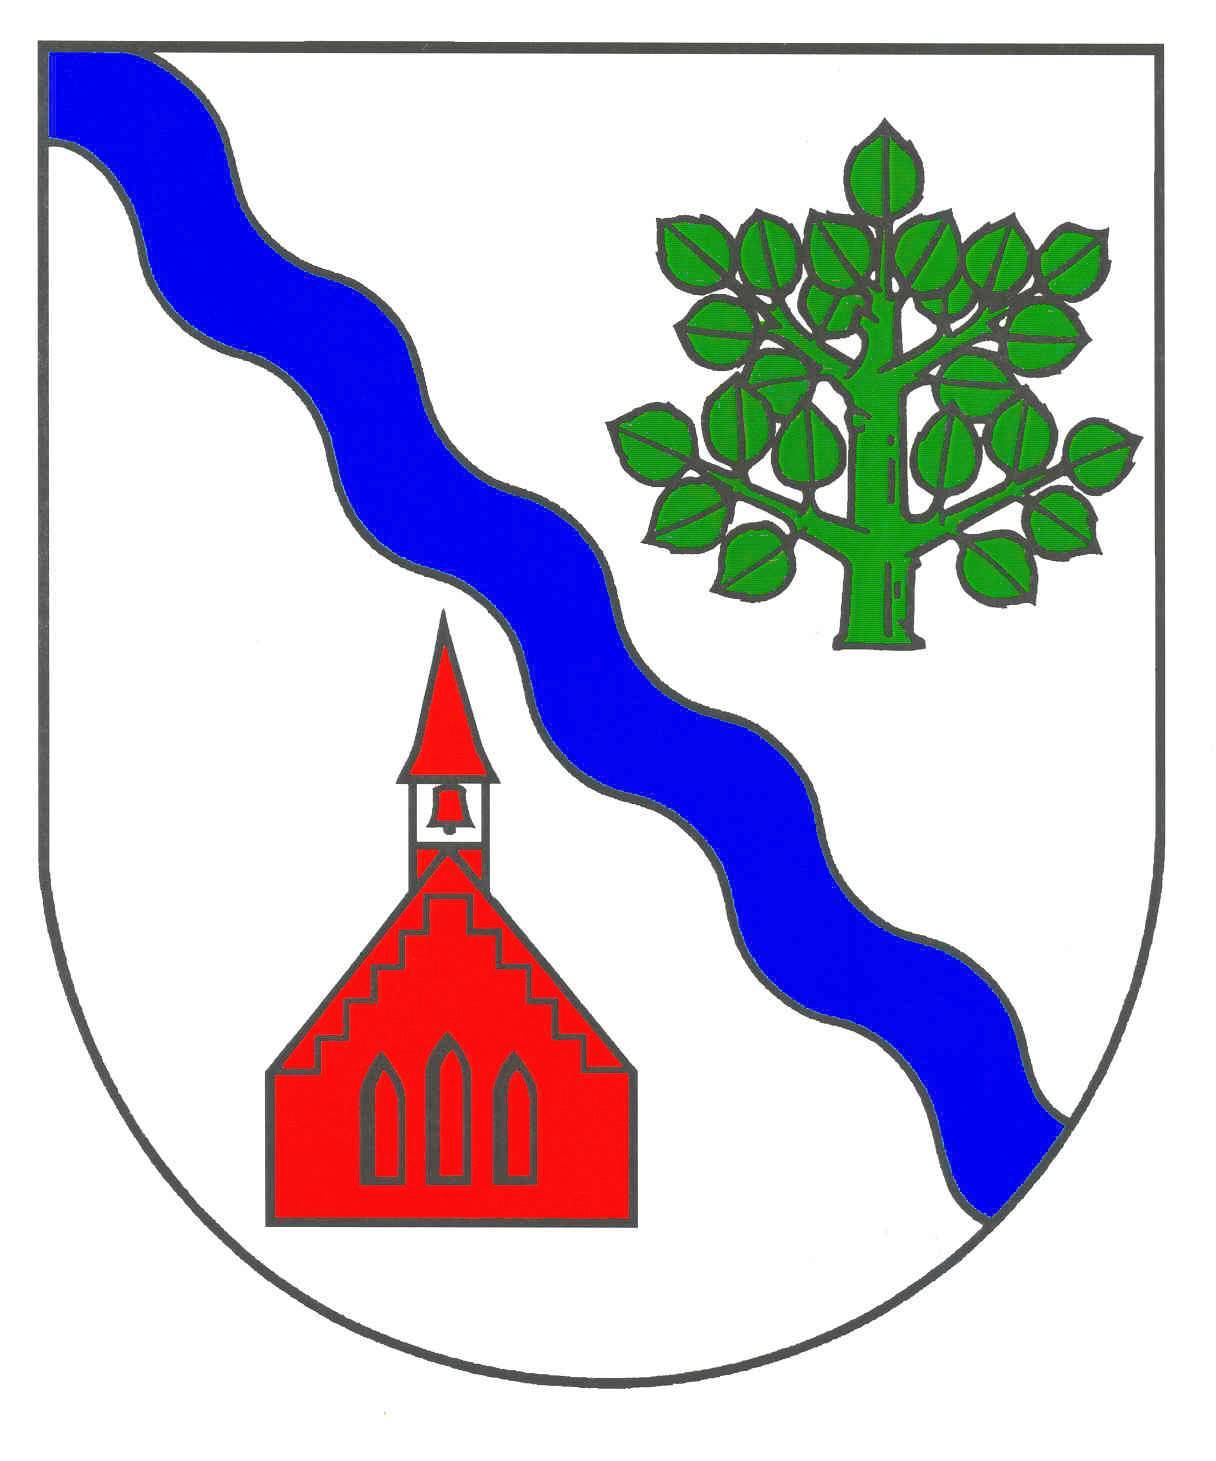 Wappen Gemeinde Köthel, Kreis Stormarn